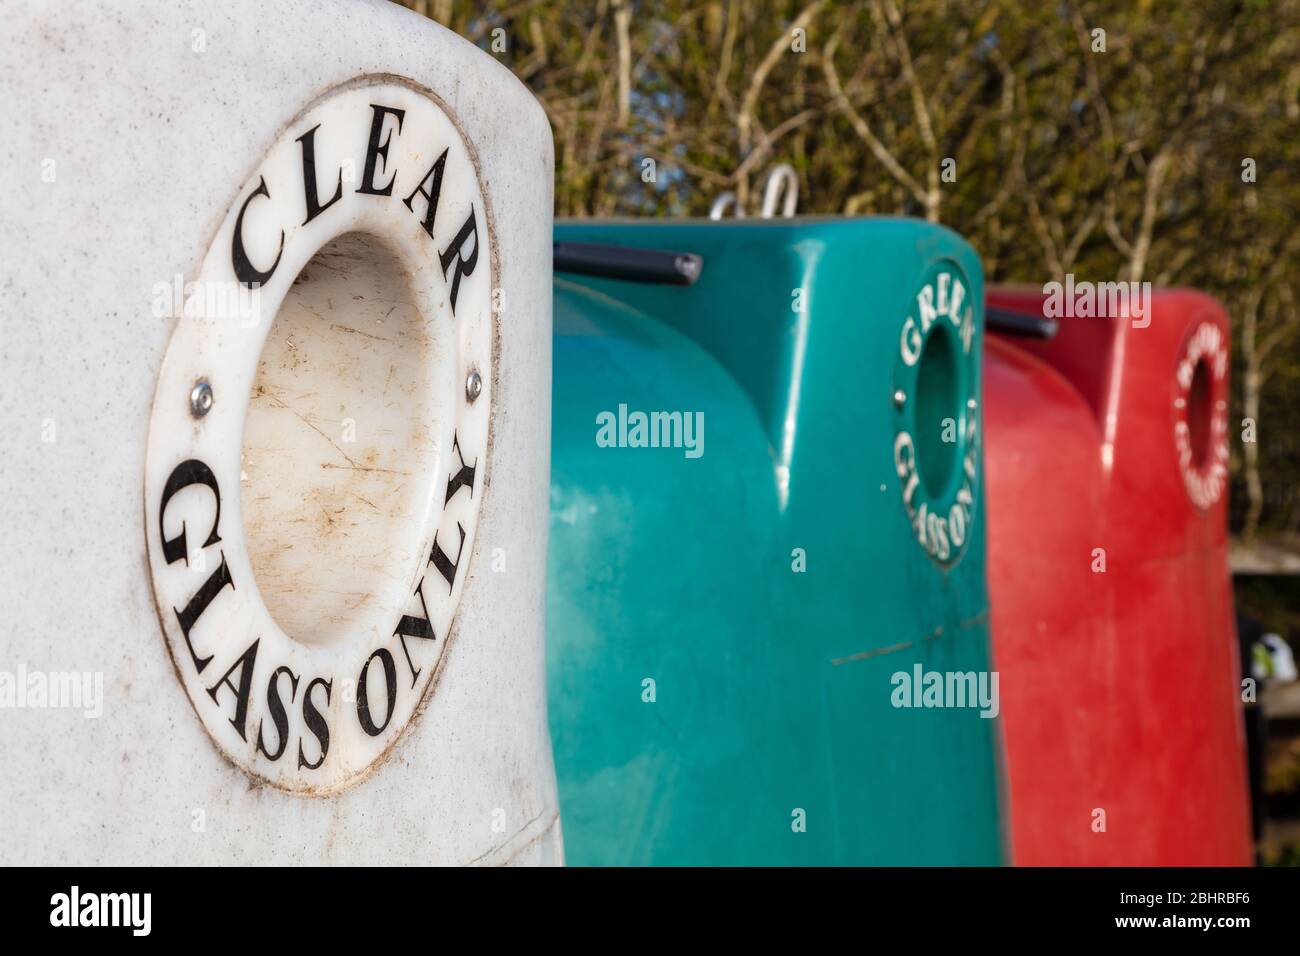 Mehrfarbenes Altglas Recycling Center Behälter für Flaschen und Gläser in verschiedenen Farben Stockfoto